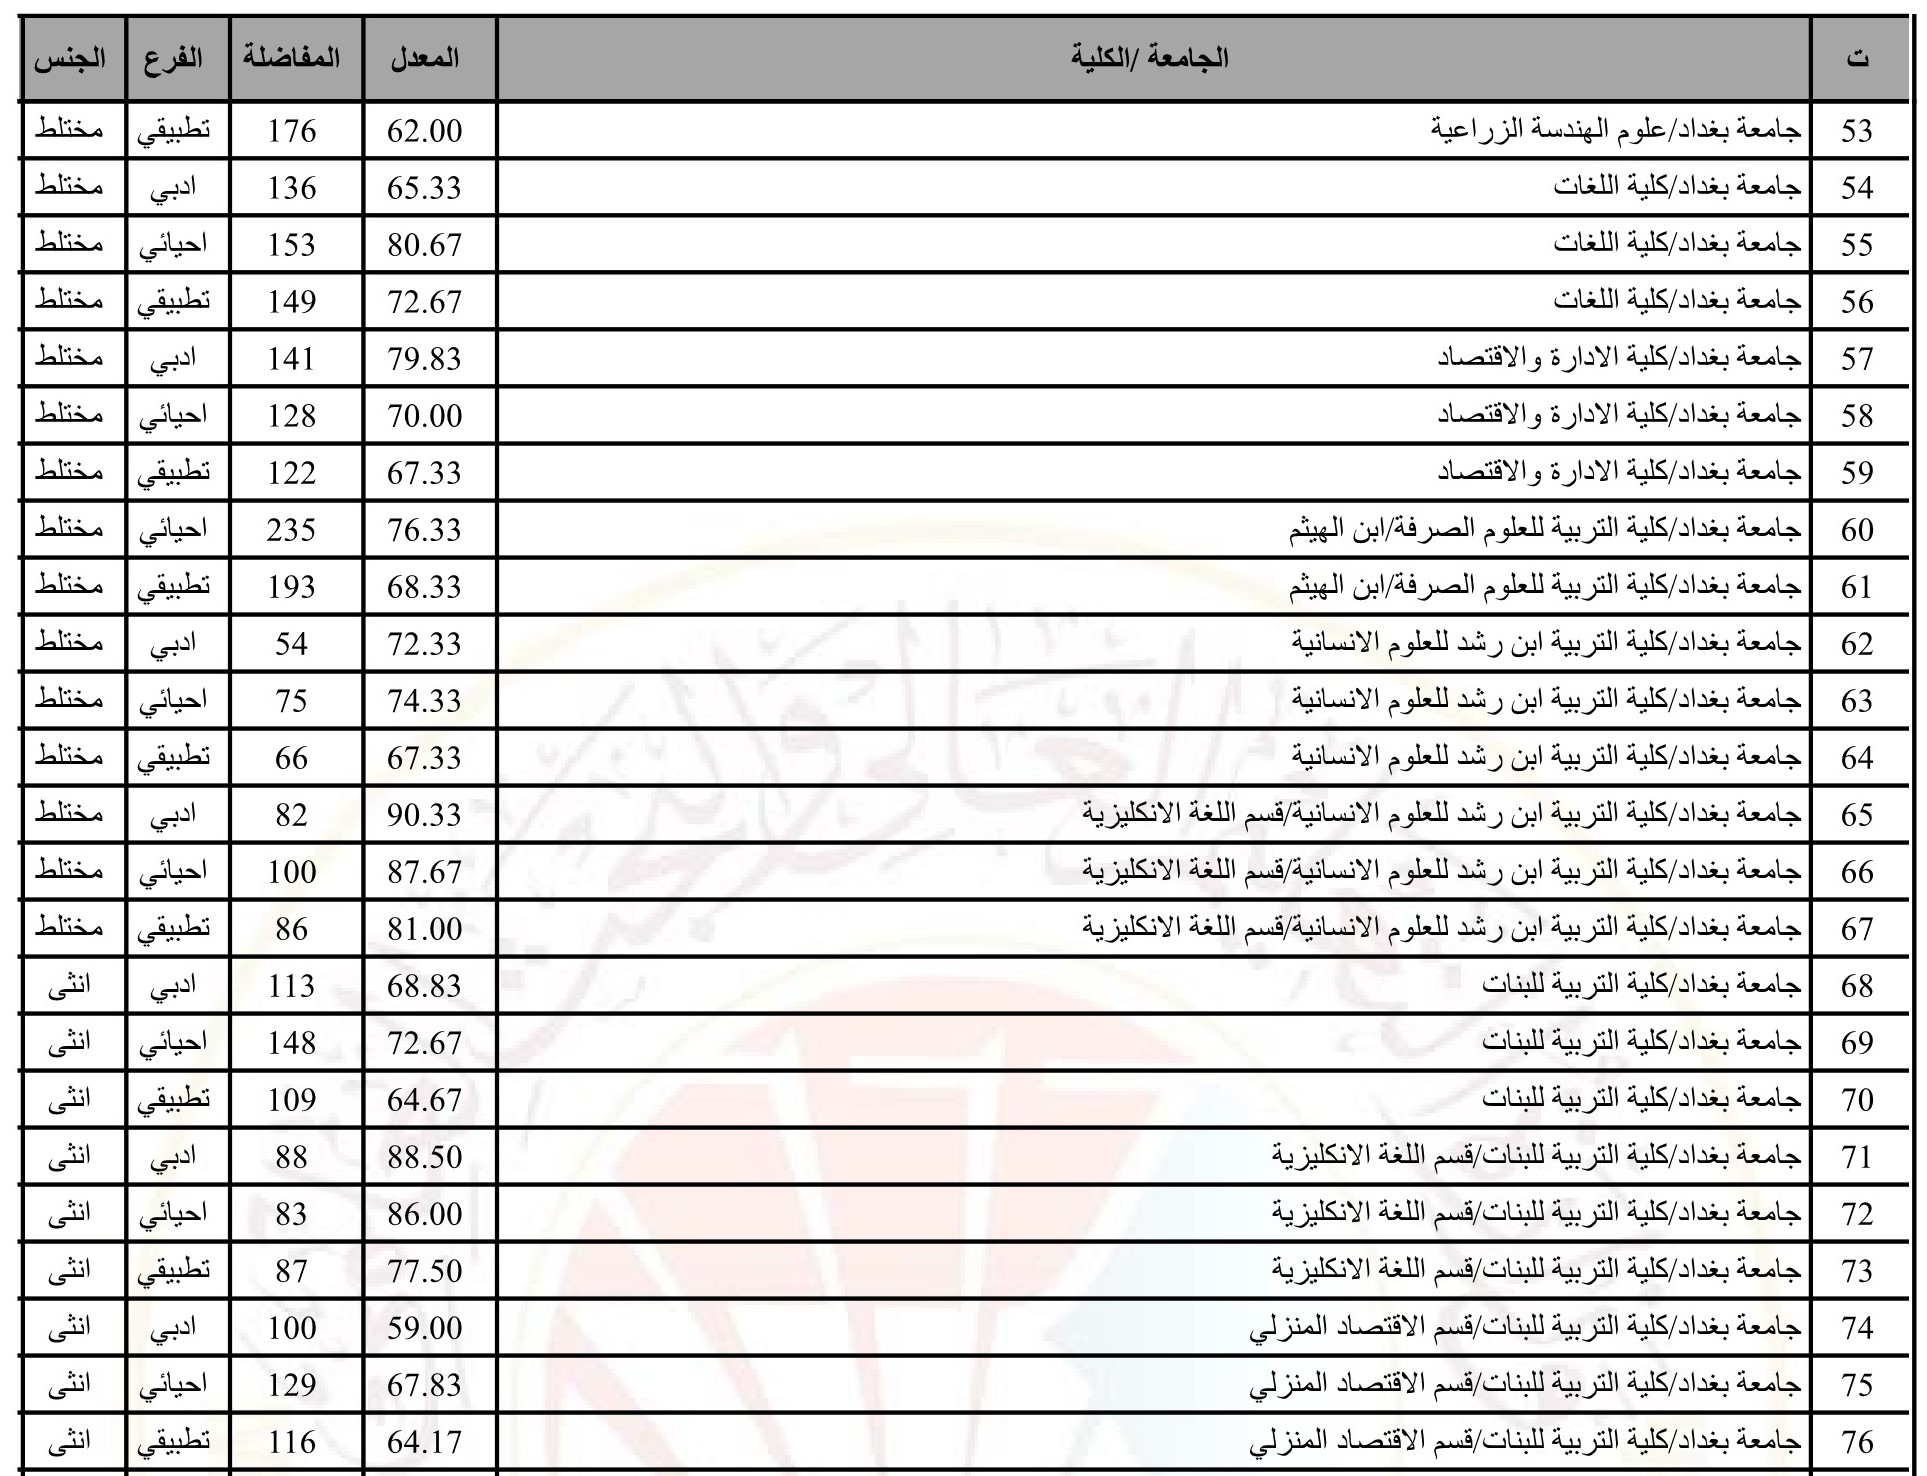 الحدود الدنيا 2022 2 Copy 2 1 - مدونة التقنية العربية